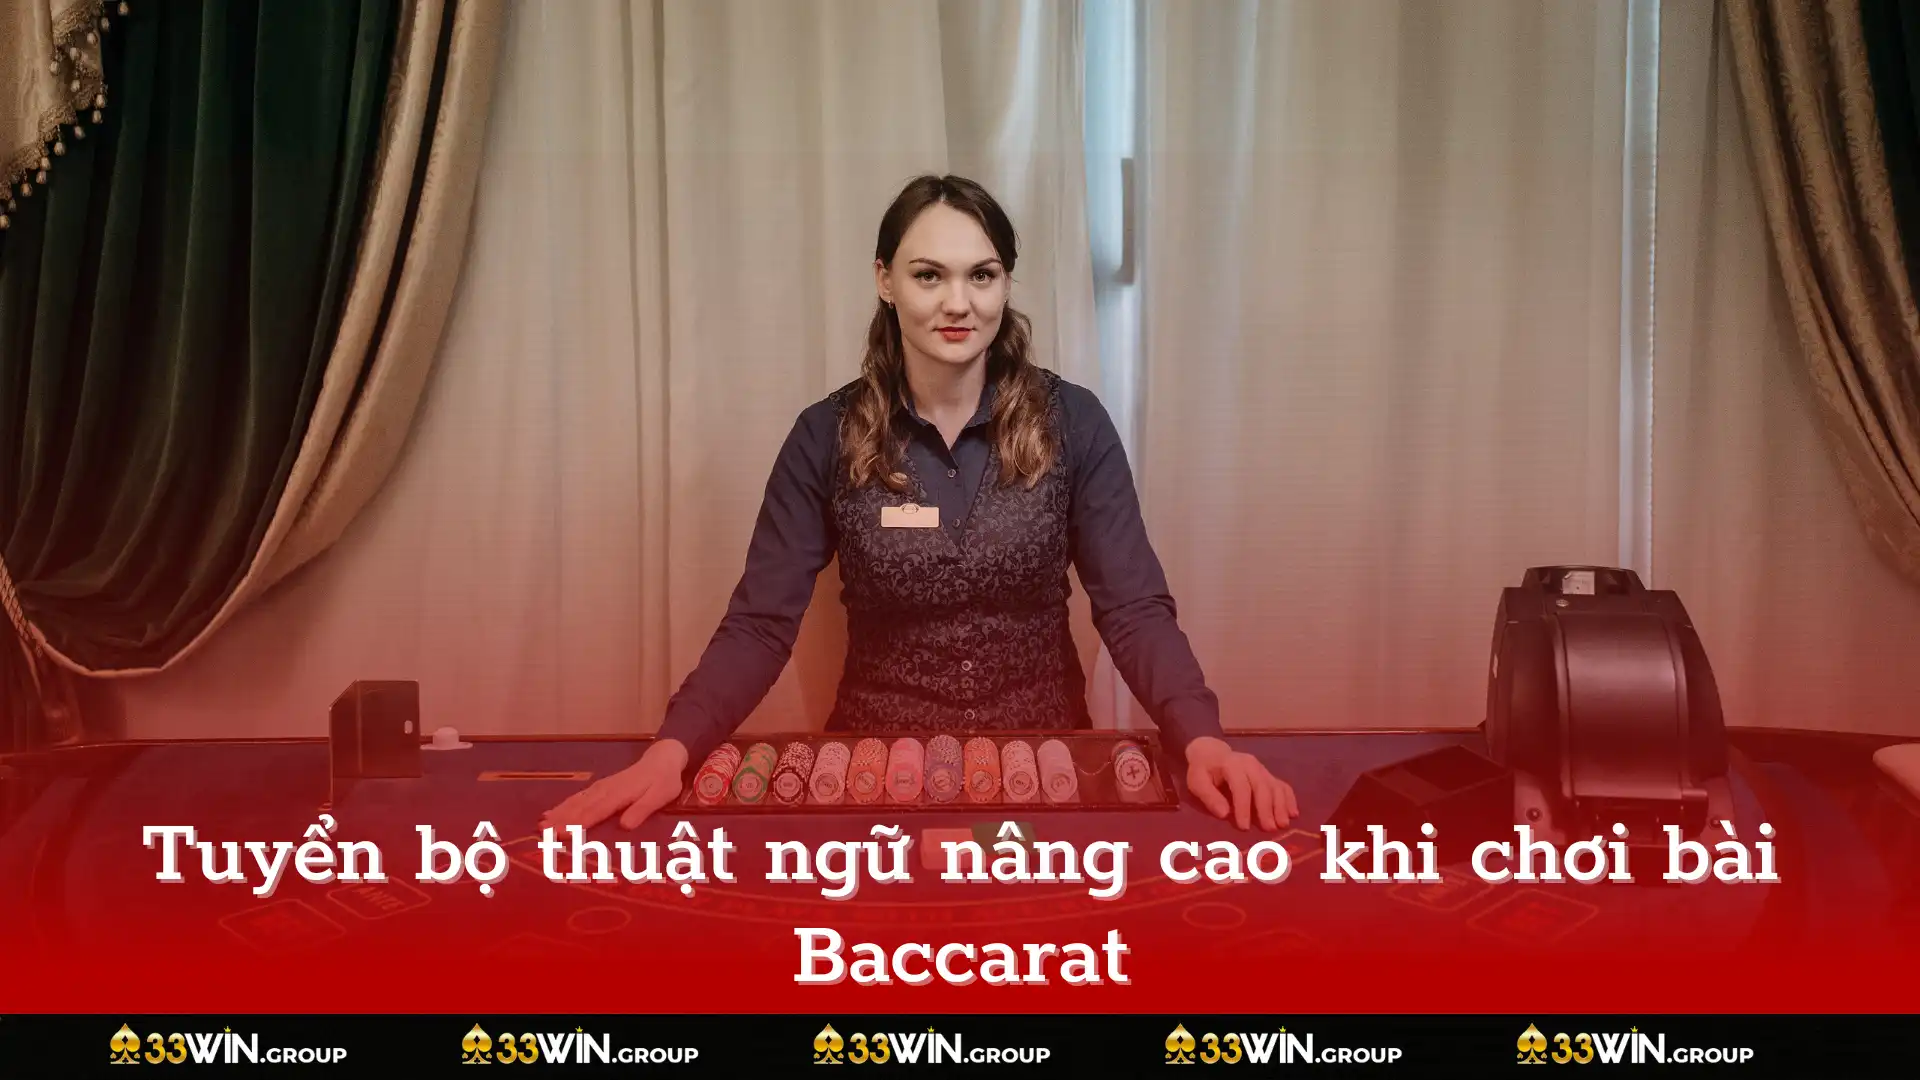 Tuyển bộ thuật ngữ nâng cao khi chơi bài Baccarat